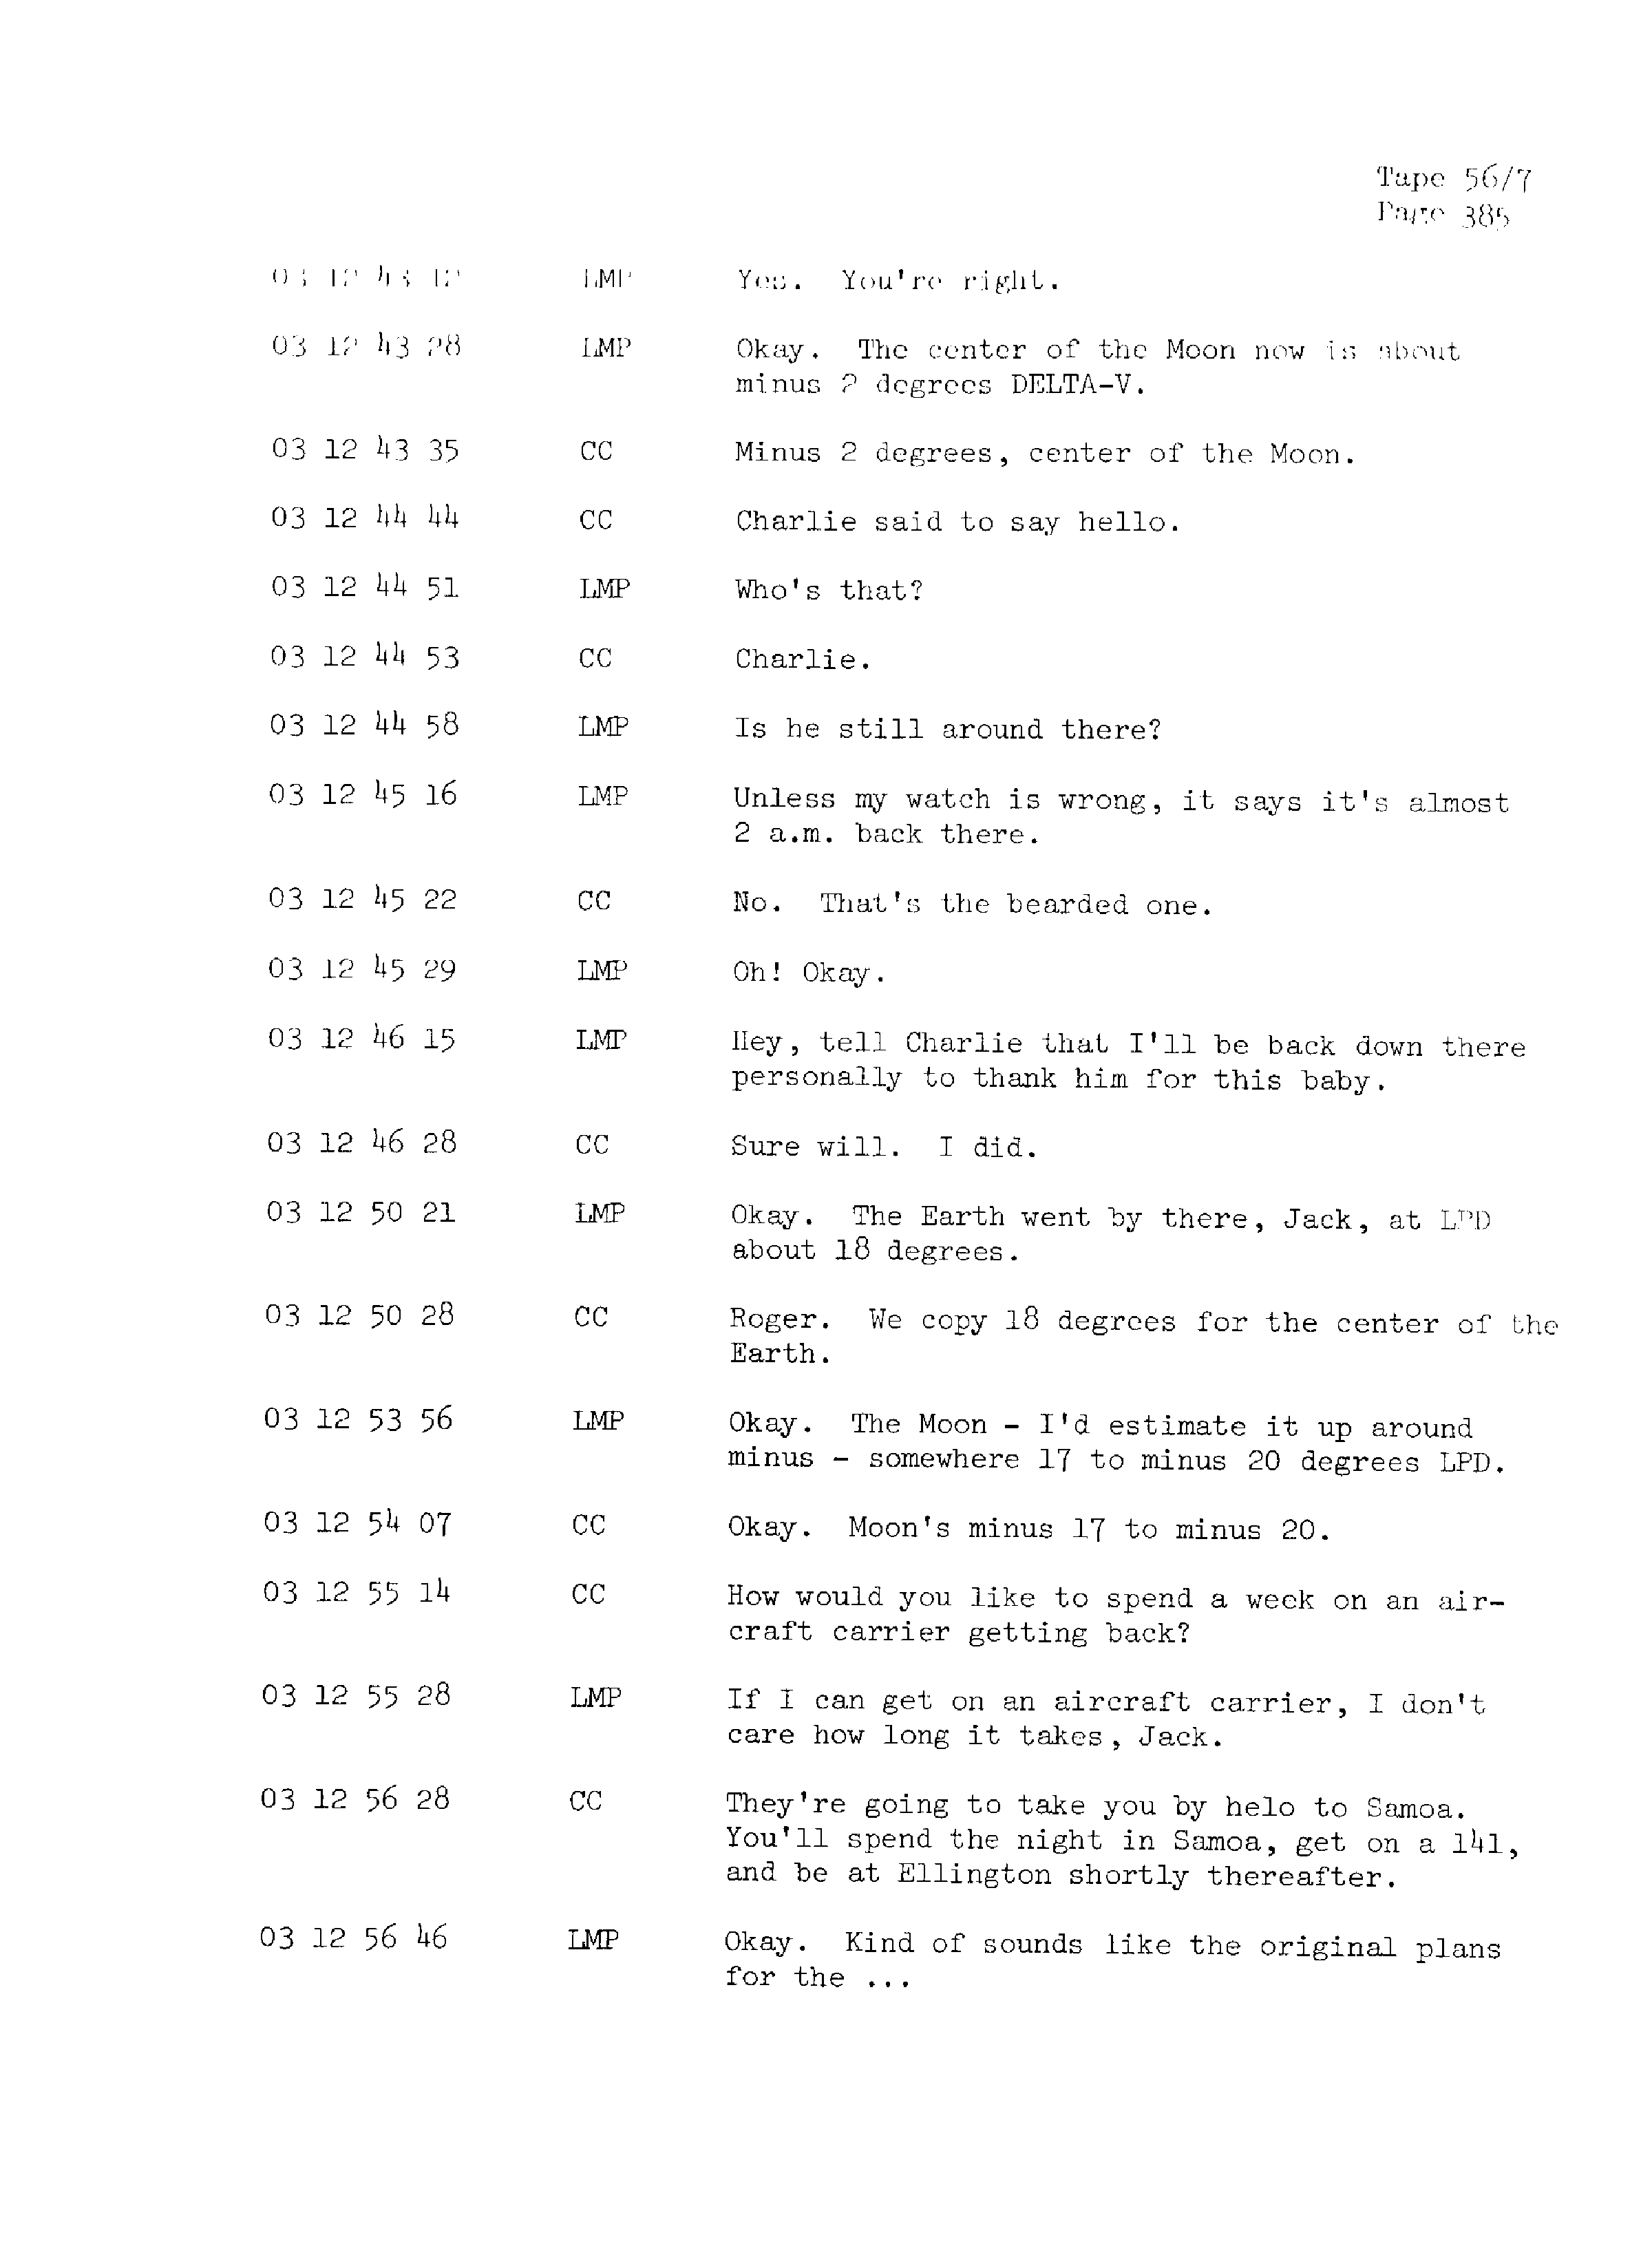 Page 392 of Apollo 13’s original transcript